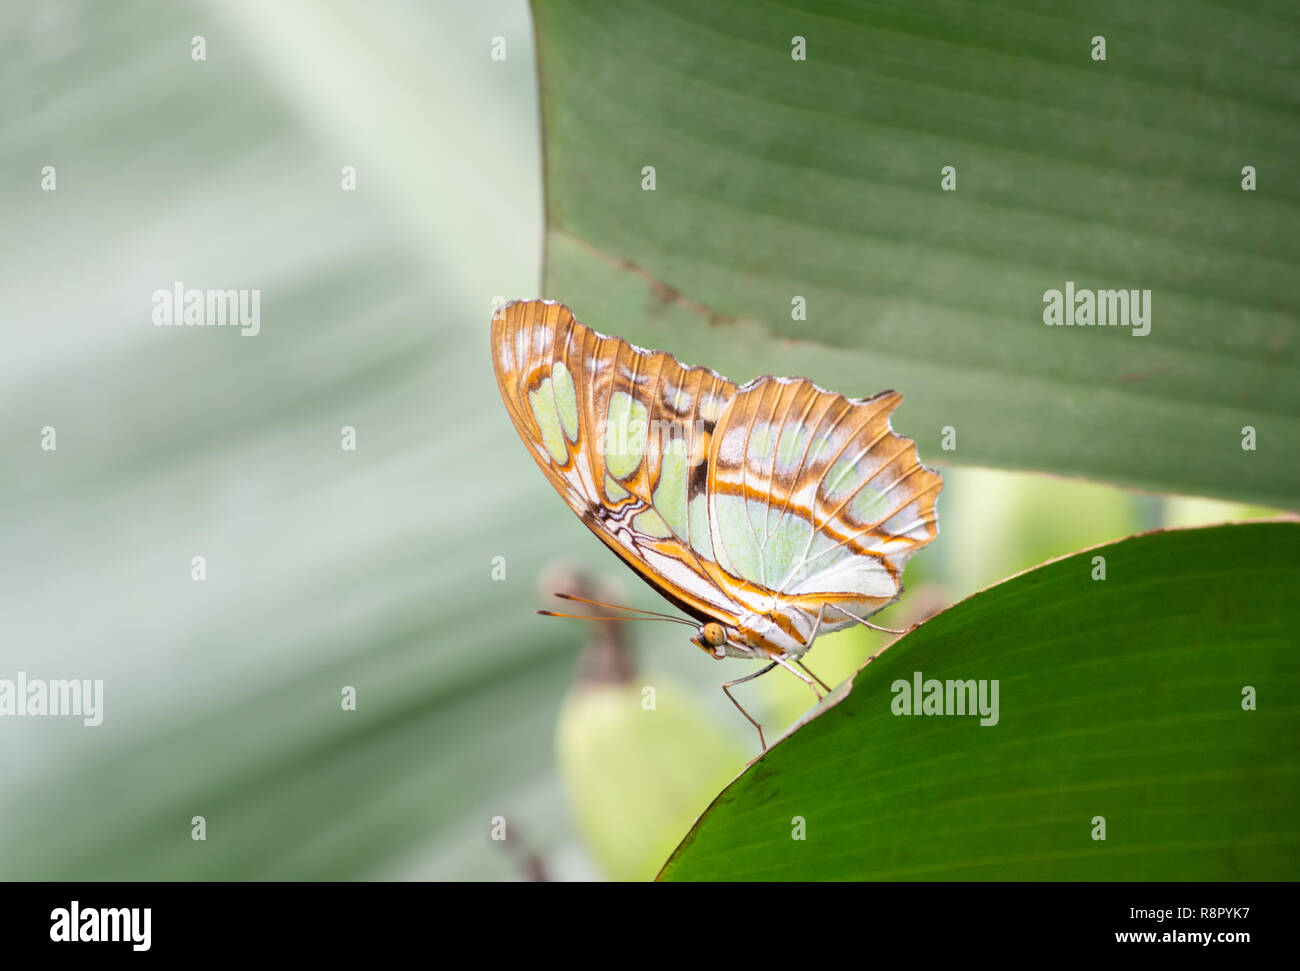 Nahaufnahme von einem bunten Schmetterling mit atemberaubenden Farben auf eine Schräge grünes Blatt im Vordergrund und eine außerhalb des Fokus grüner Hintergrund Stockfoto